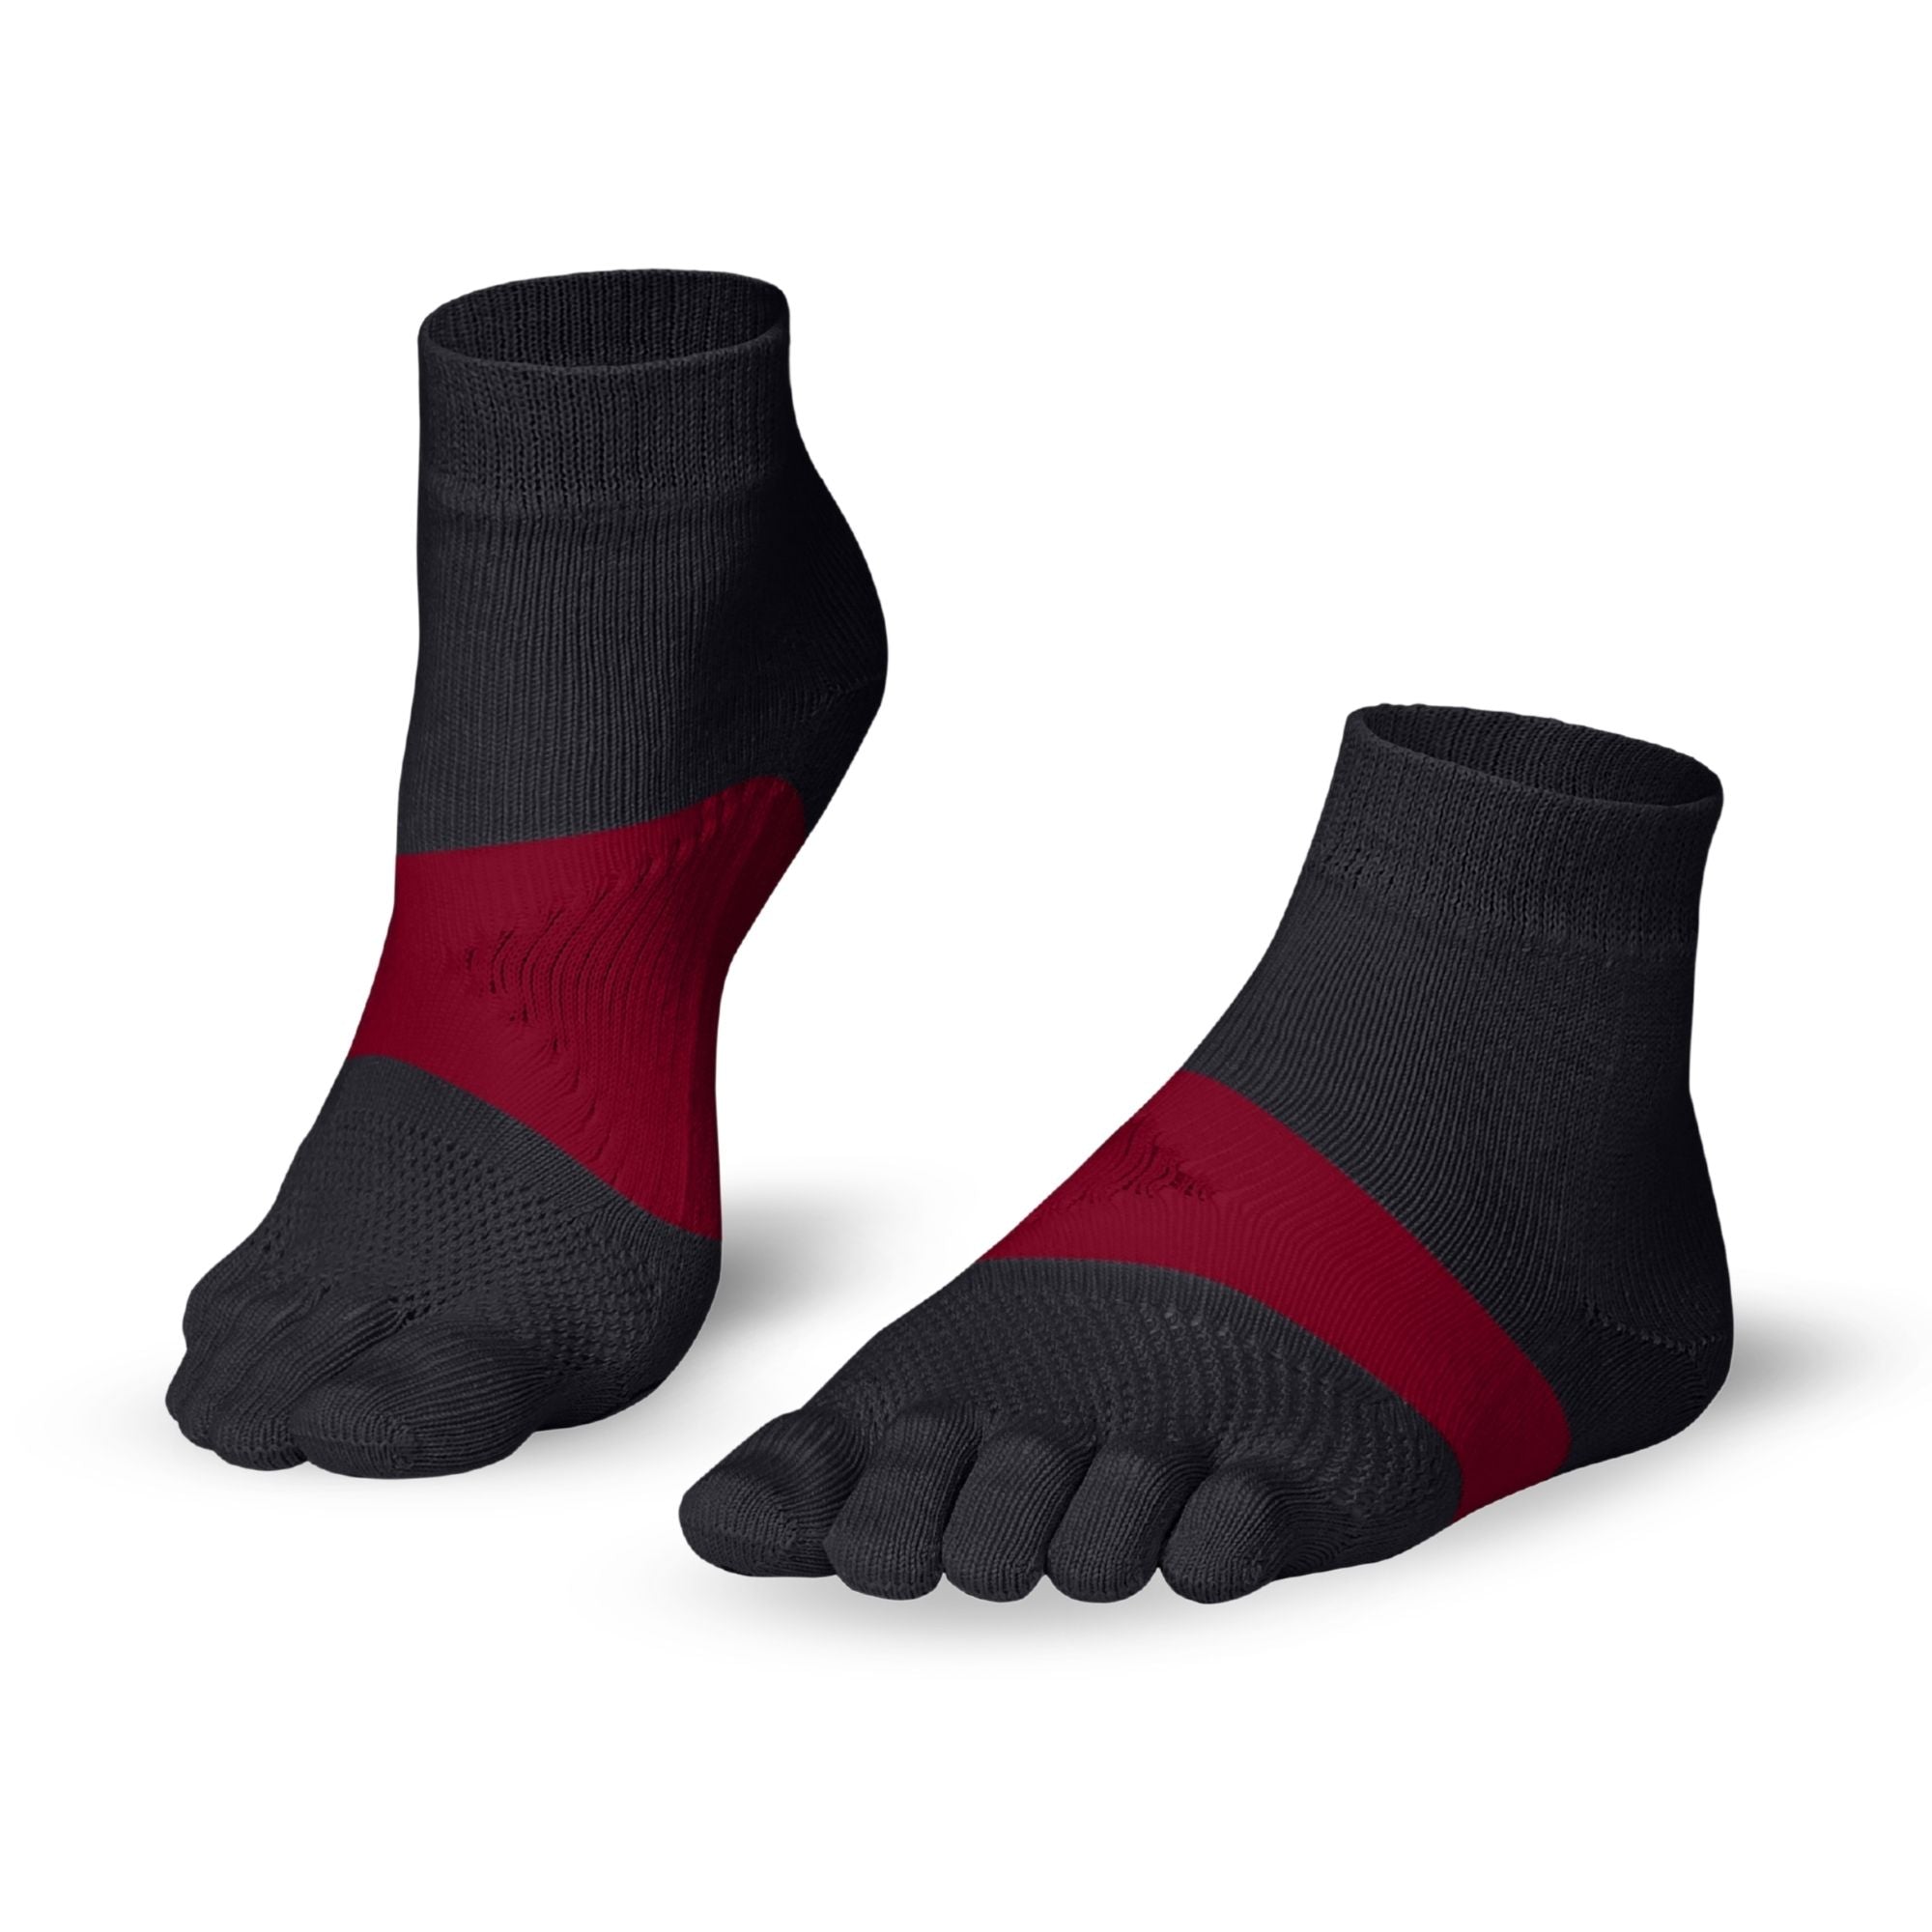 Knitido Maratona calze con dita per lo sport e la corsa su lunghe distanze - grigio/cremisi